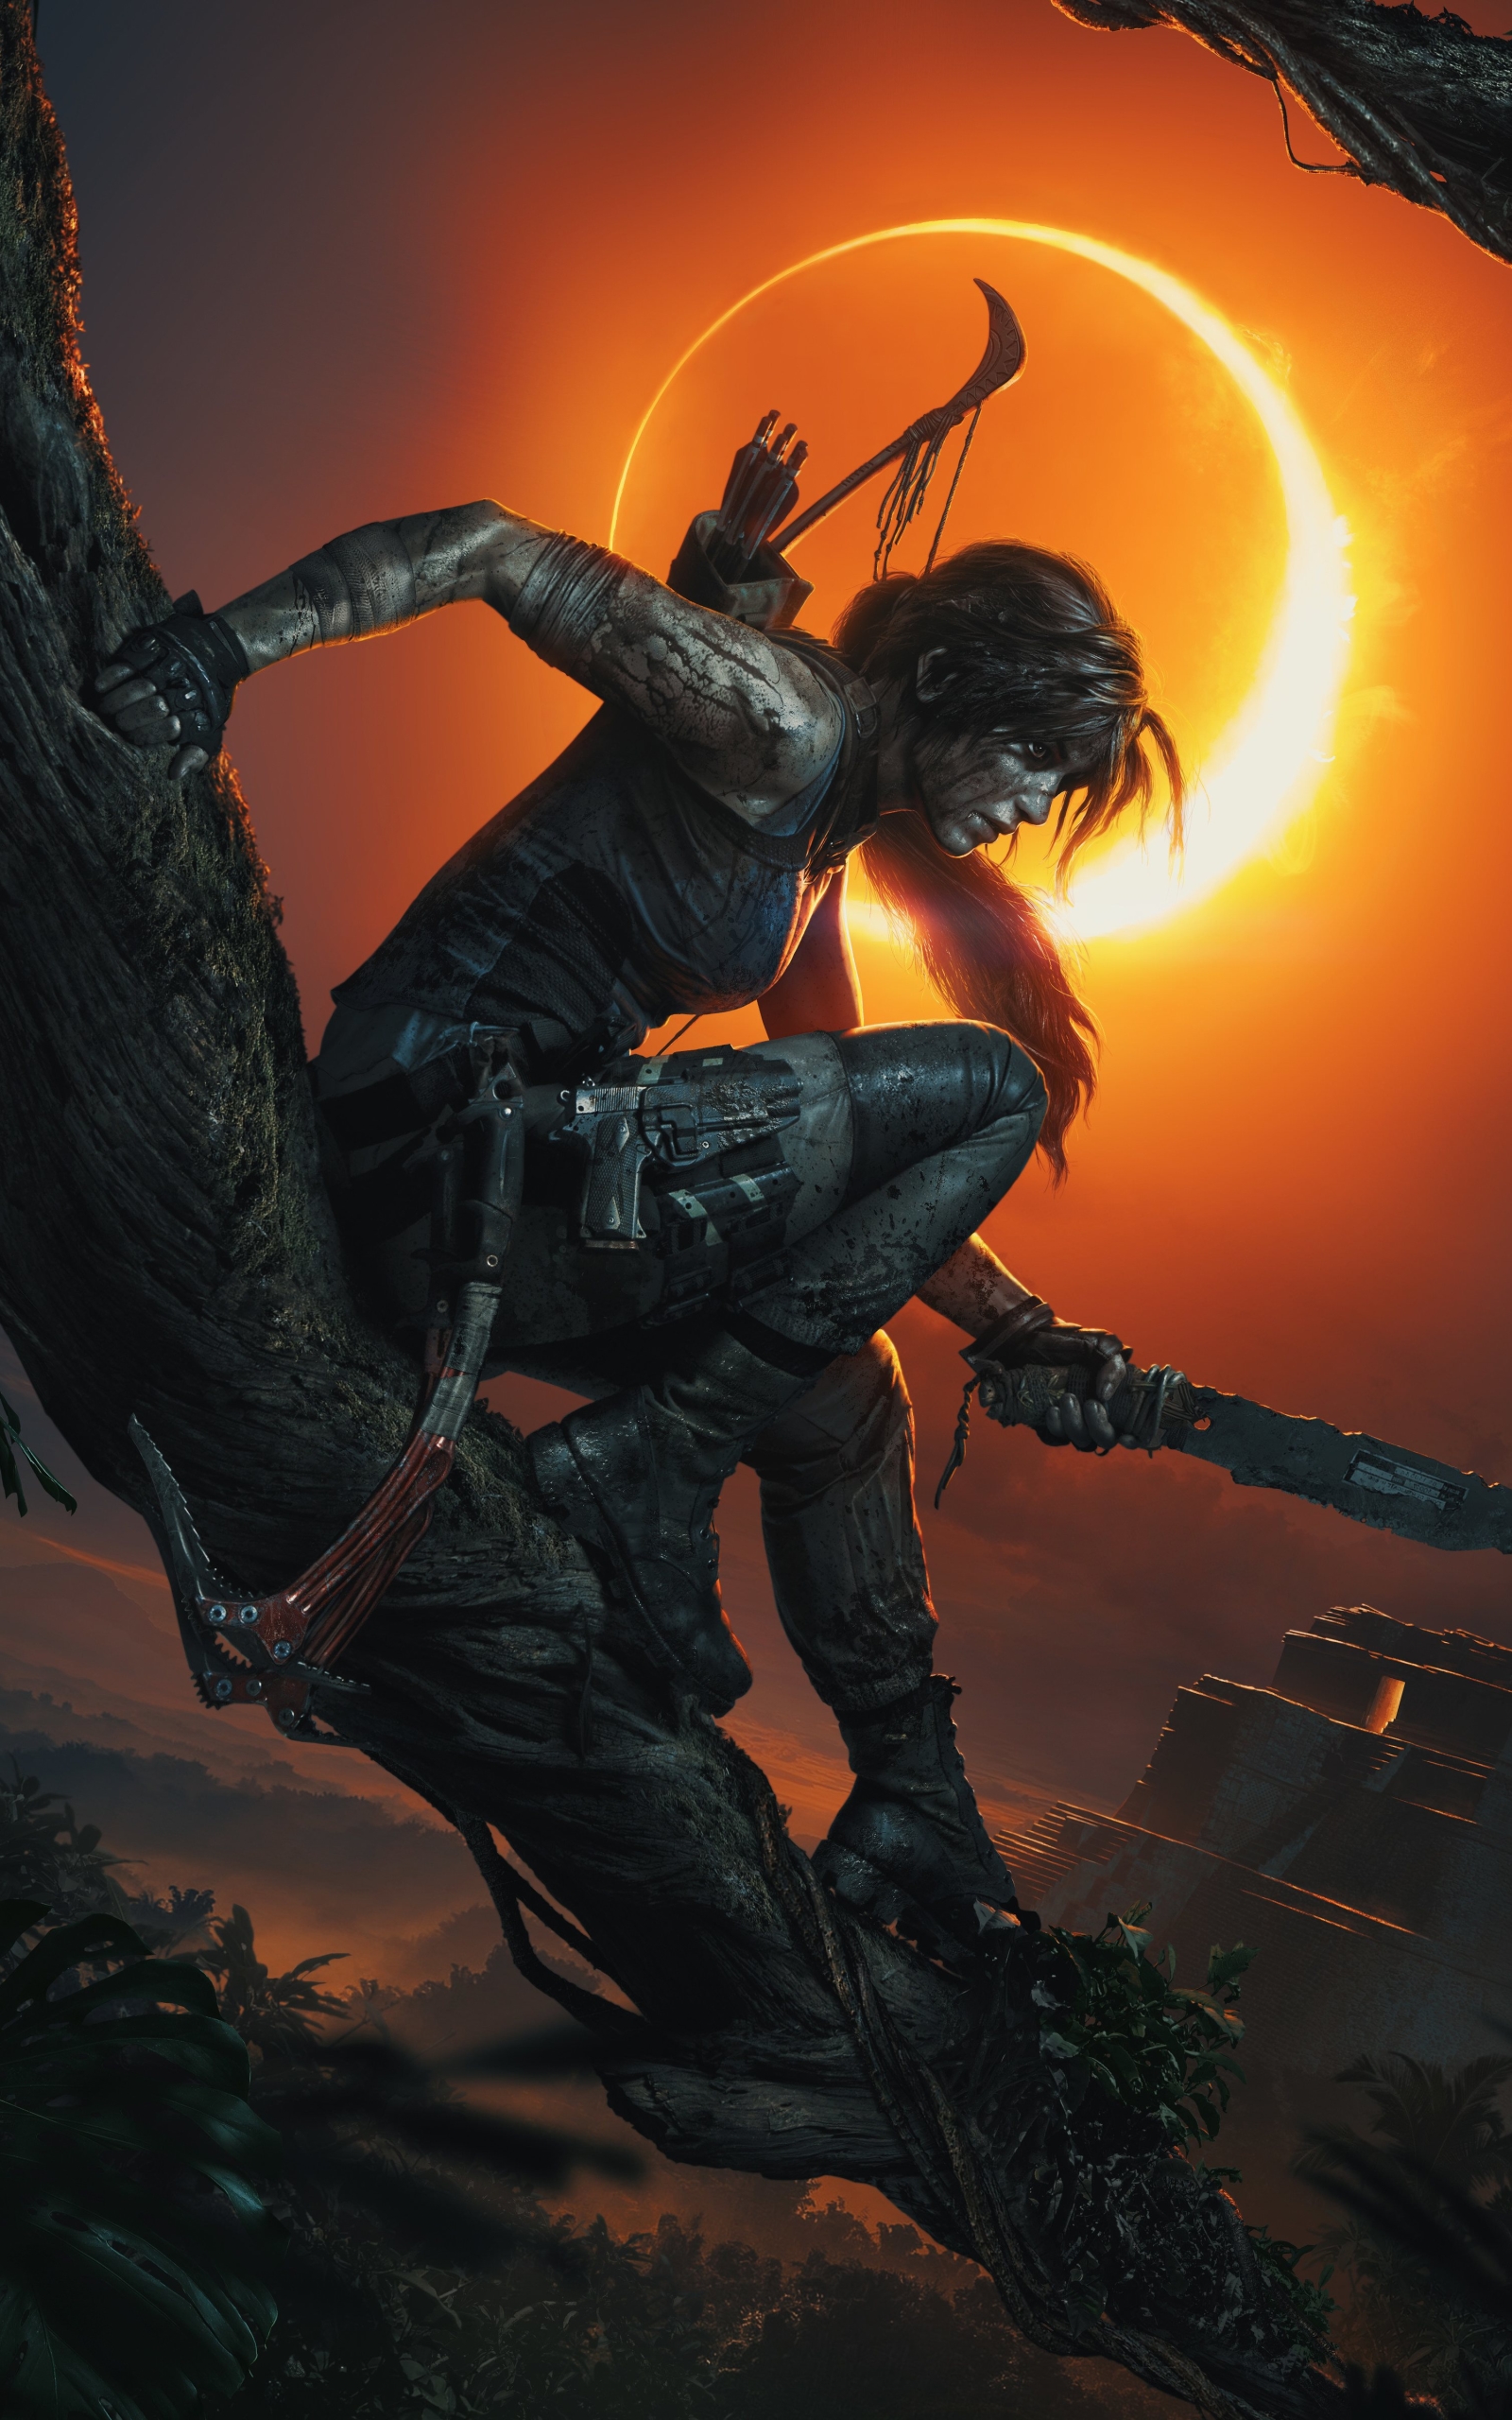 Descarga gratuita de fondo de pantalla para móvil de Noche, Tomb Raider, Videojuego, Mujer Guerrera, Lara Croft, Shadow Of The Tomb Raider.